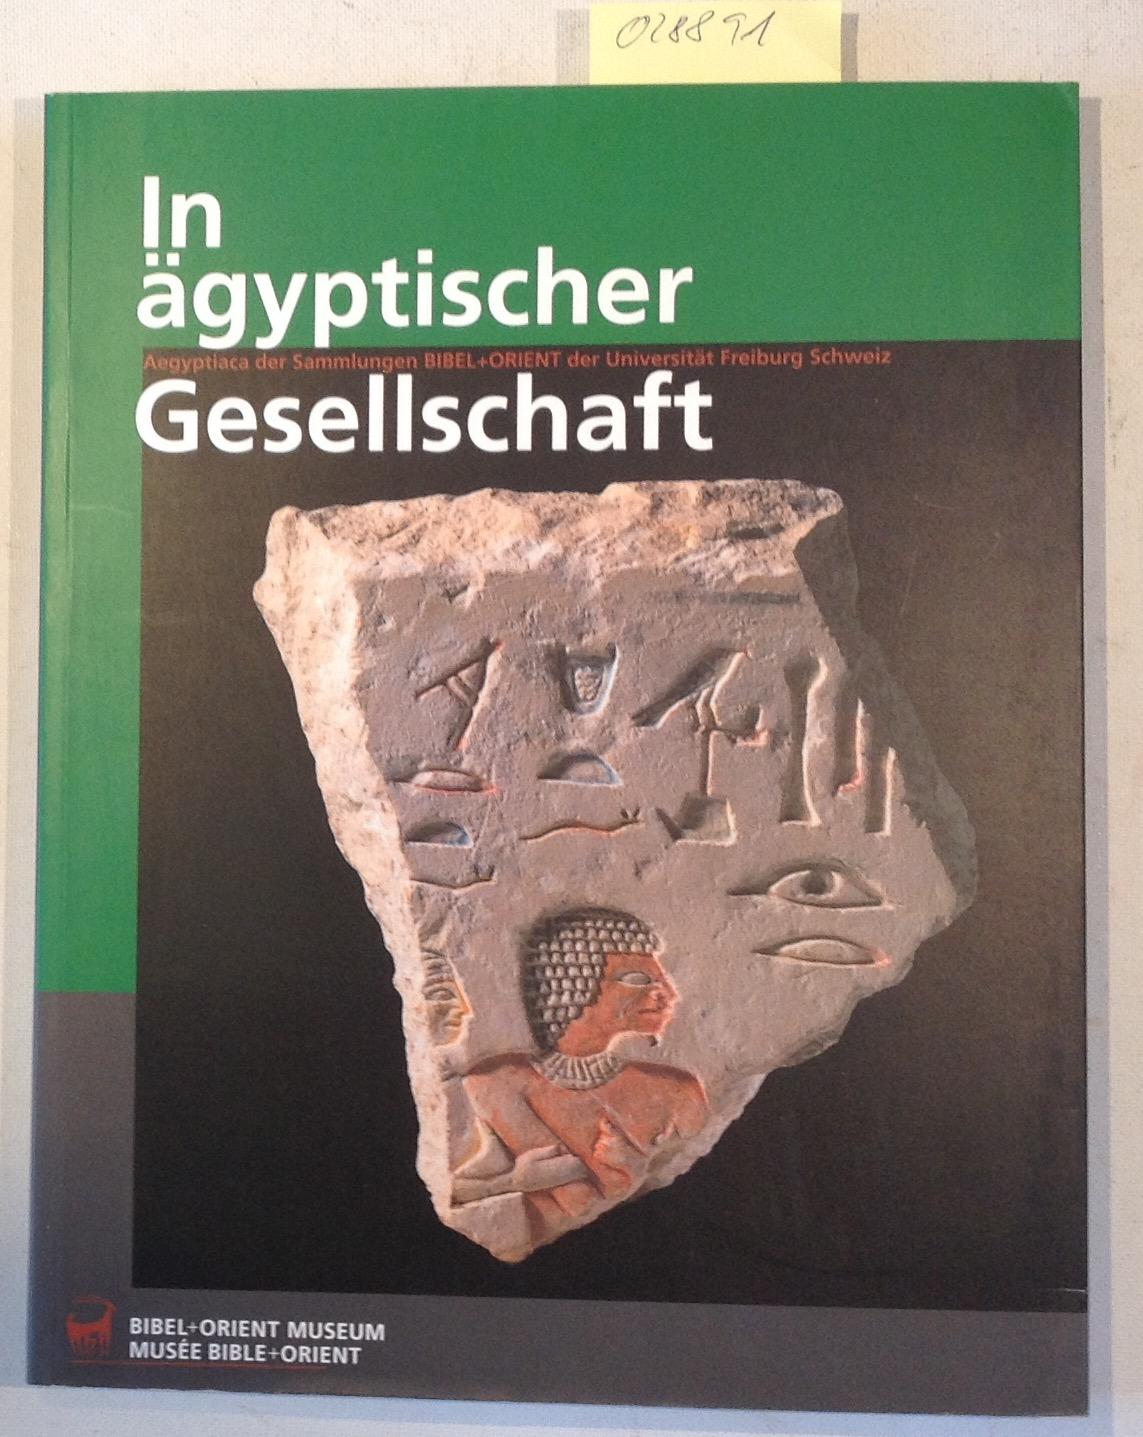 In ägyptischer Gesellschaft: Aegyptica der Sammlungen BIBEL + ORIENT an der Universität Freiburg Schweiz